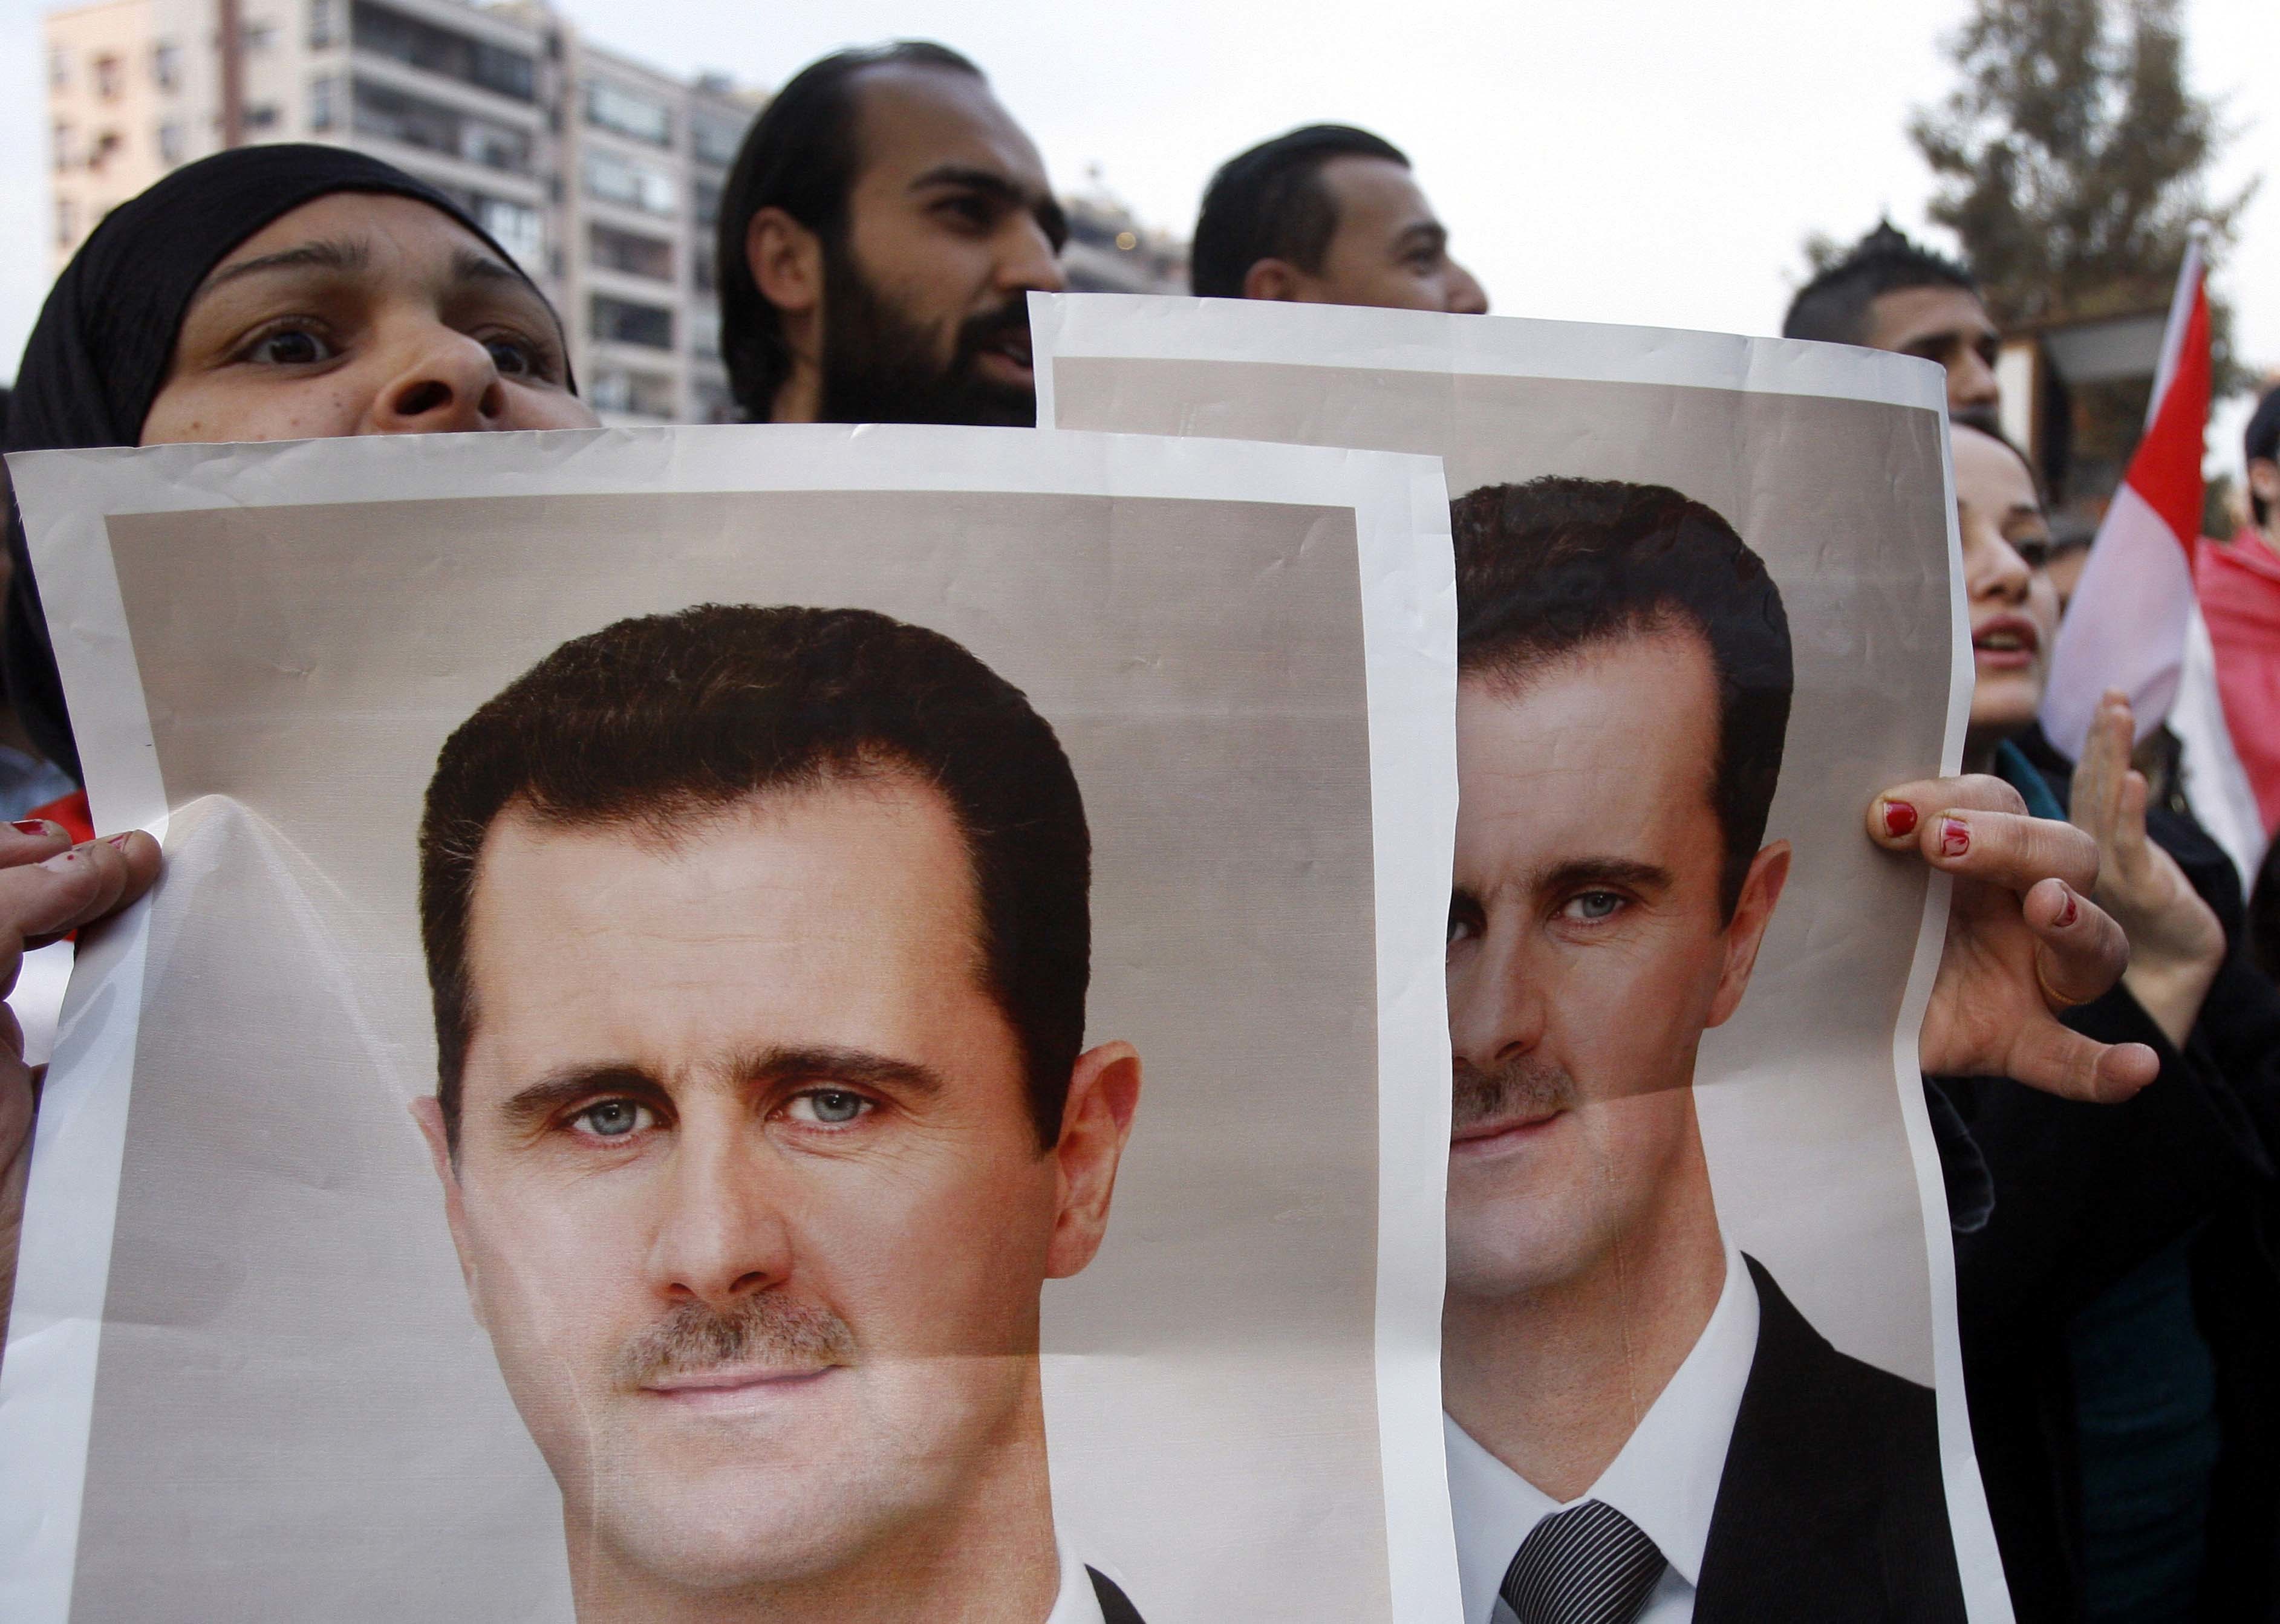 Συρία: επικήρυξαν τον Άσαντ με 25 εκατομμύρια δολάρια